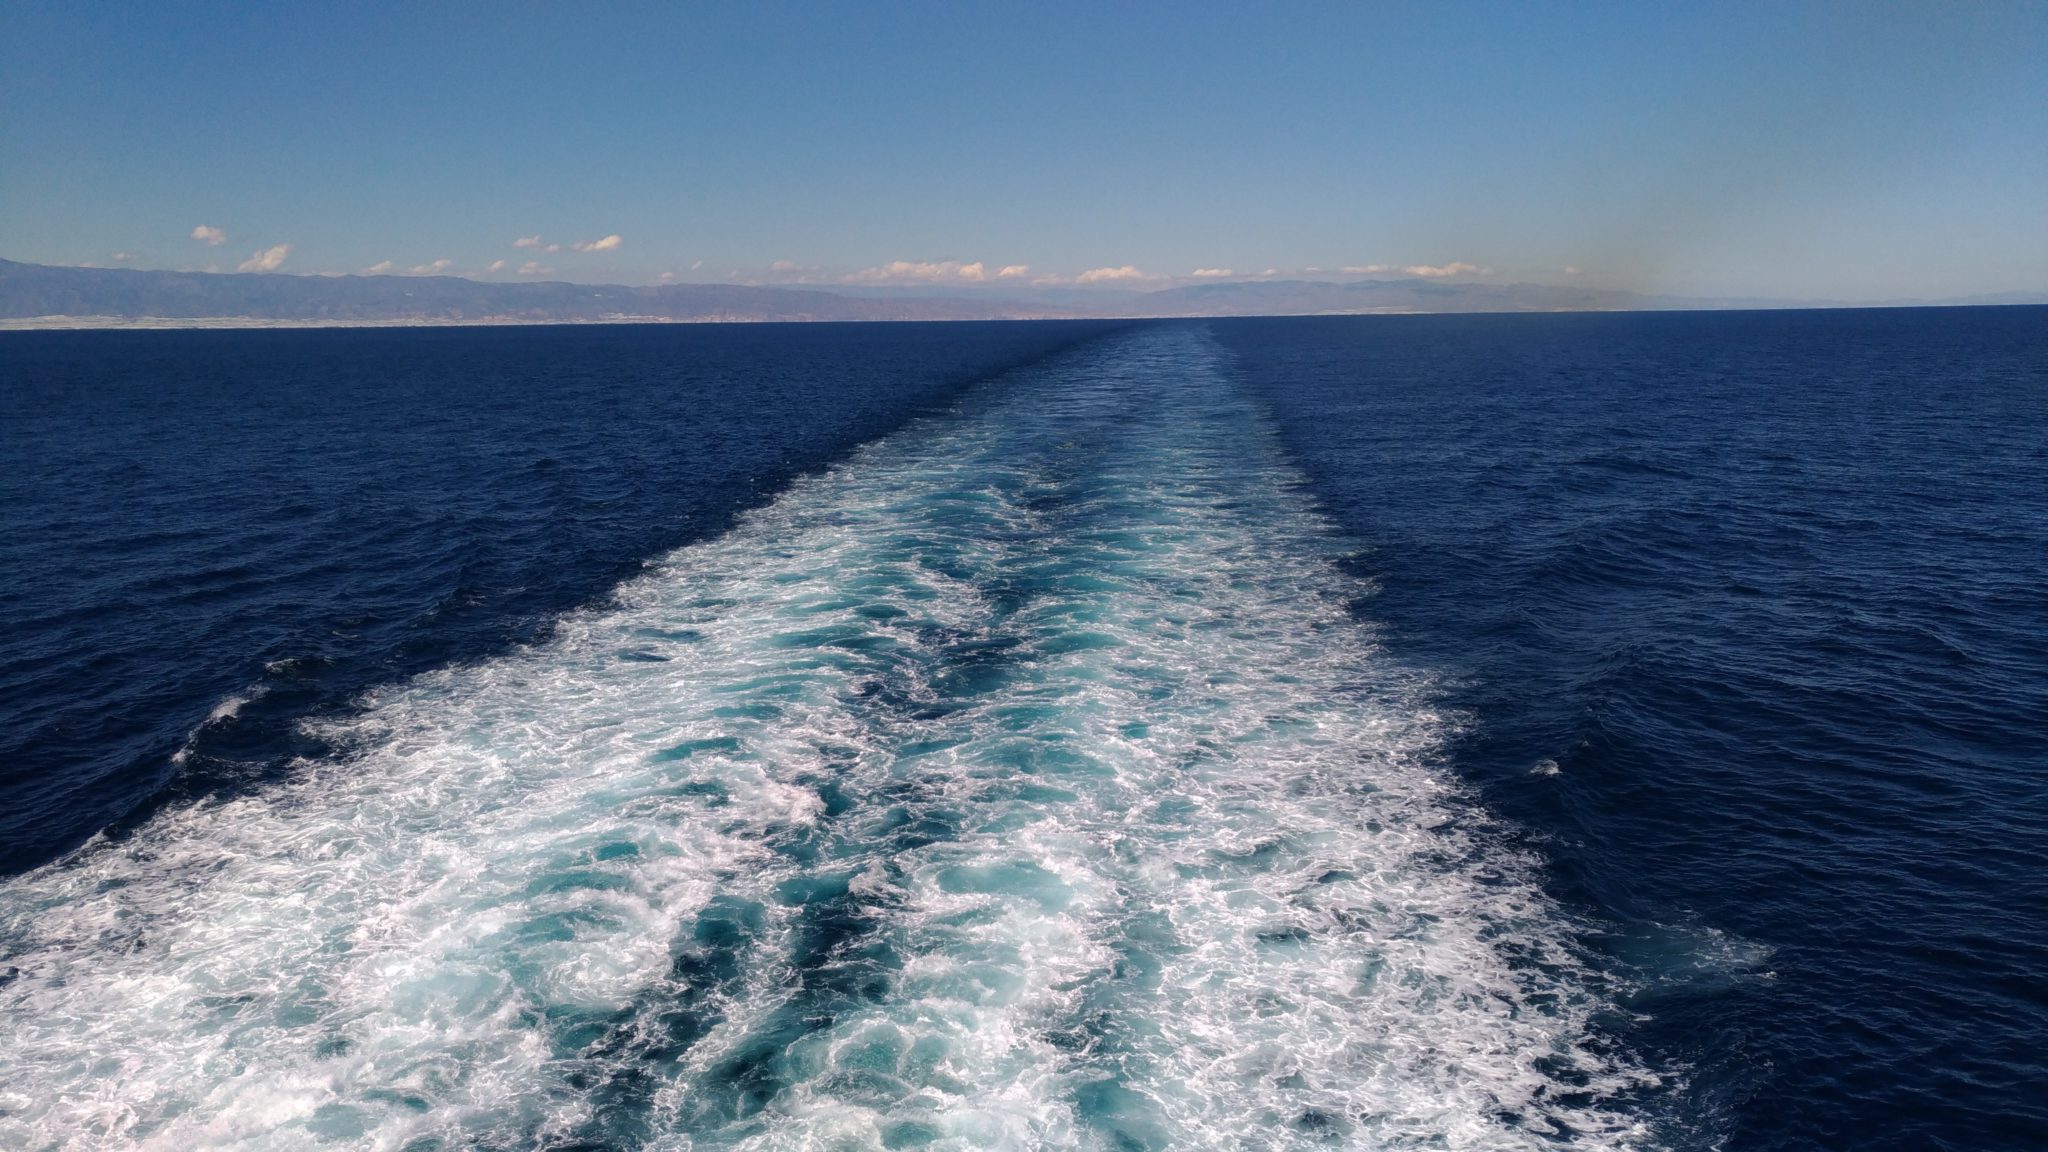 Третий по размеру океан. Средиземное море Гибралтарский пролив Атлантический океан. Галоклин Скаген. Город Скаген два течения. Тихий океан и Атлантический океан.